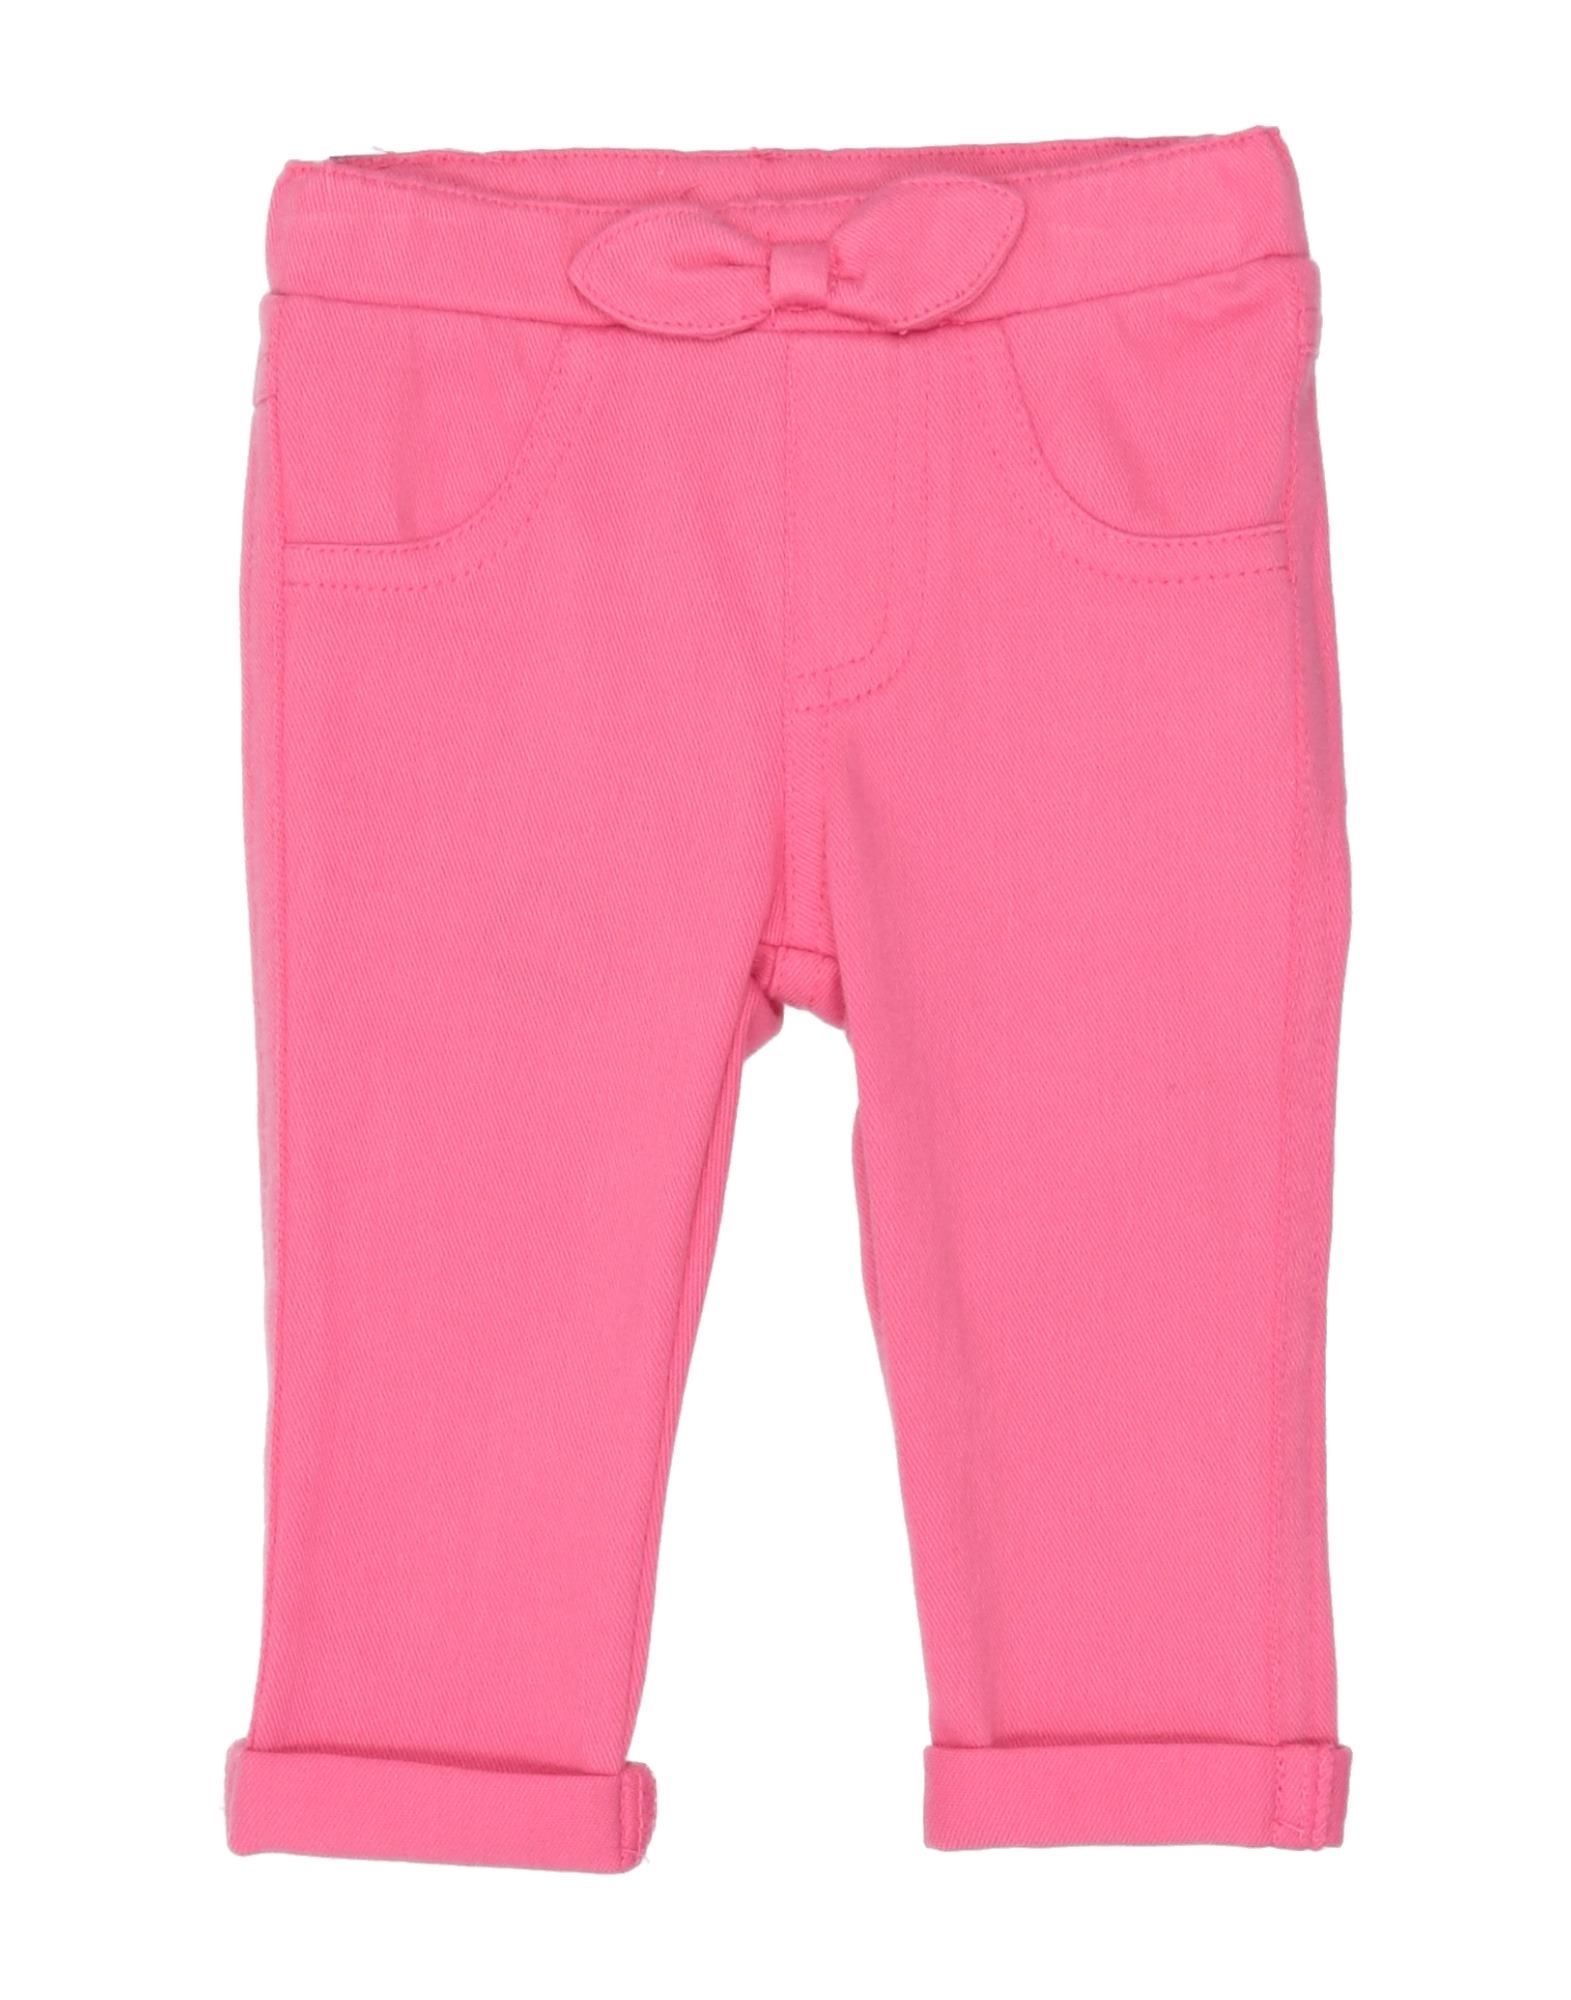 Mayoral Kids' Pants In Pink